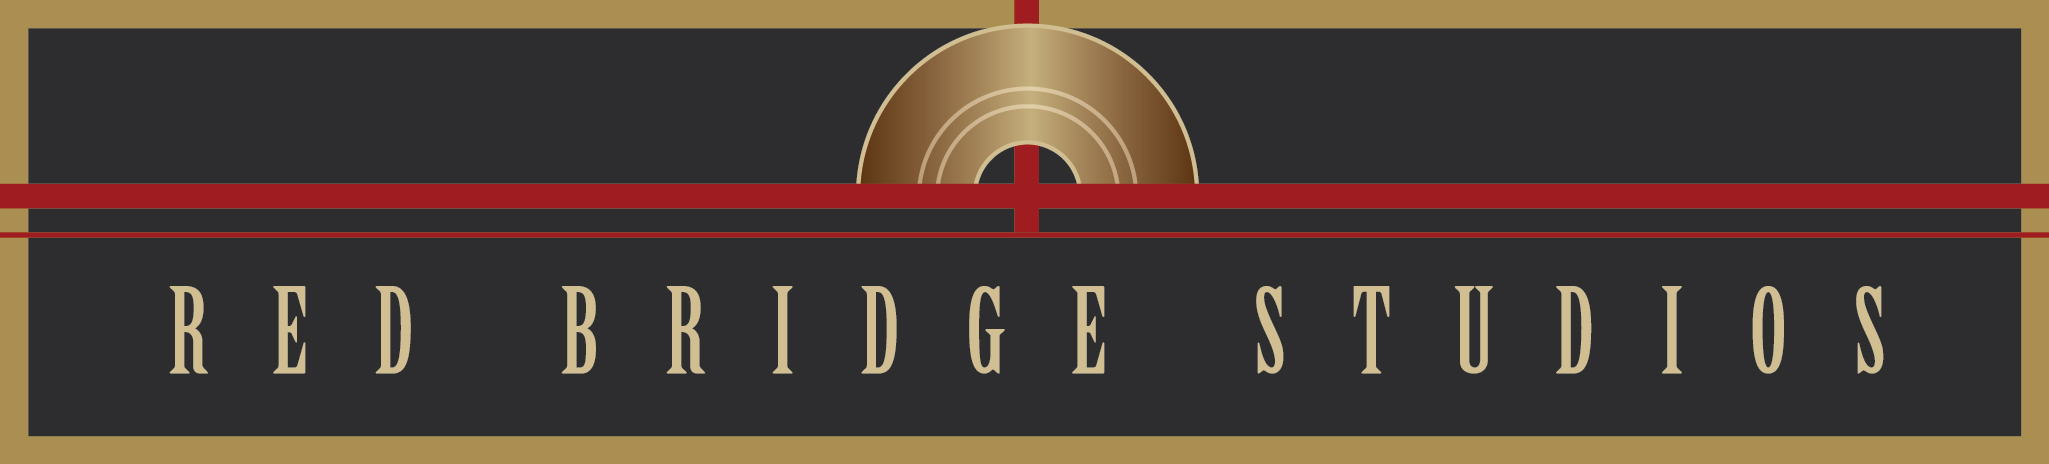 Red Bridge Studios logo